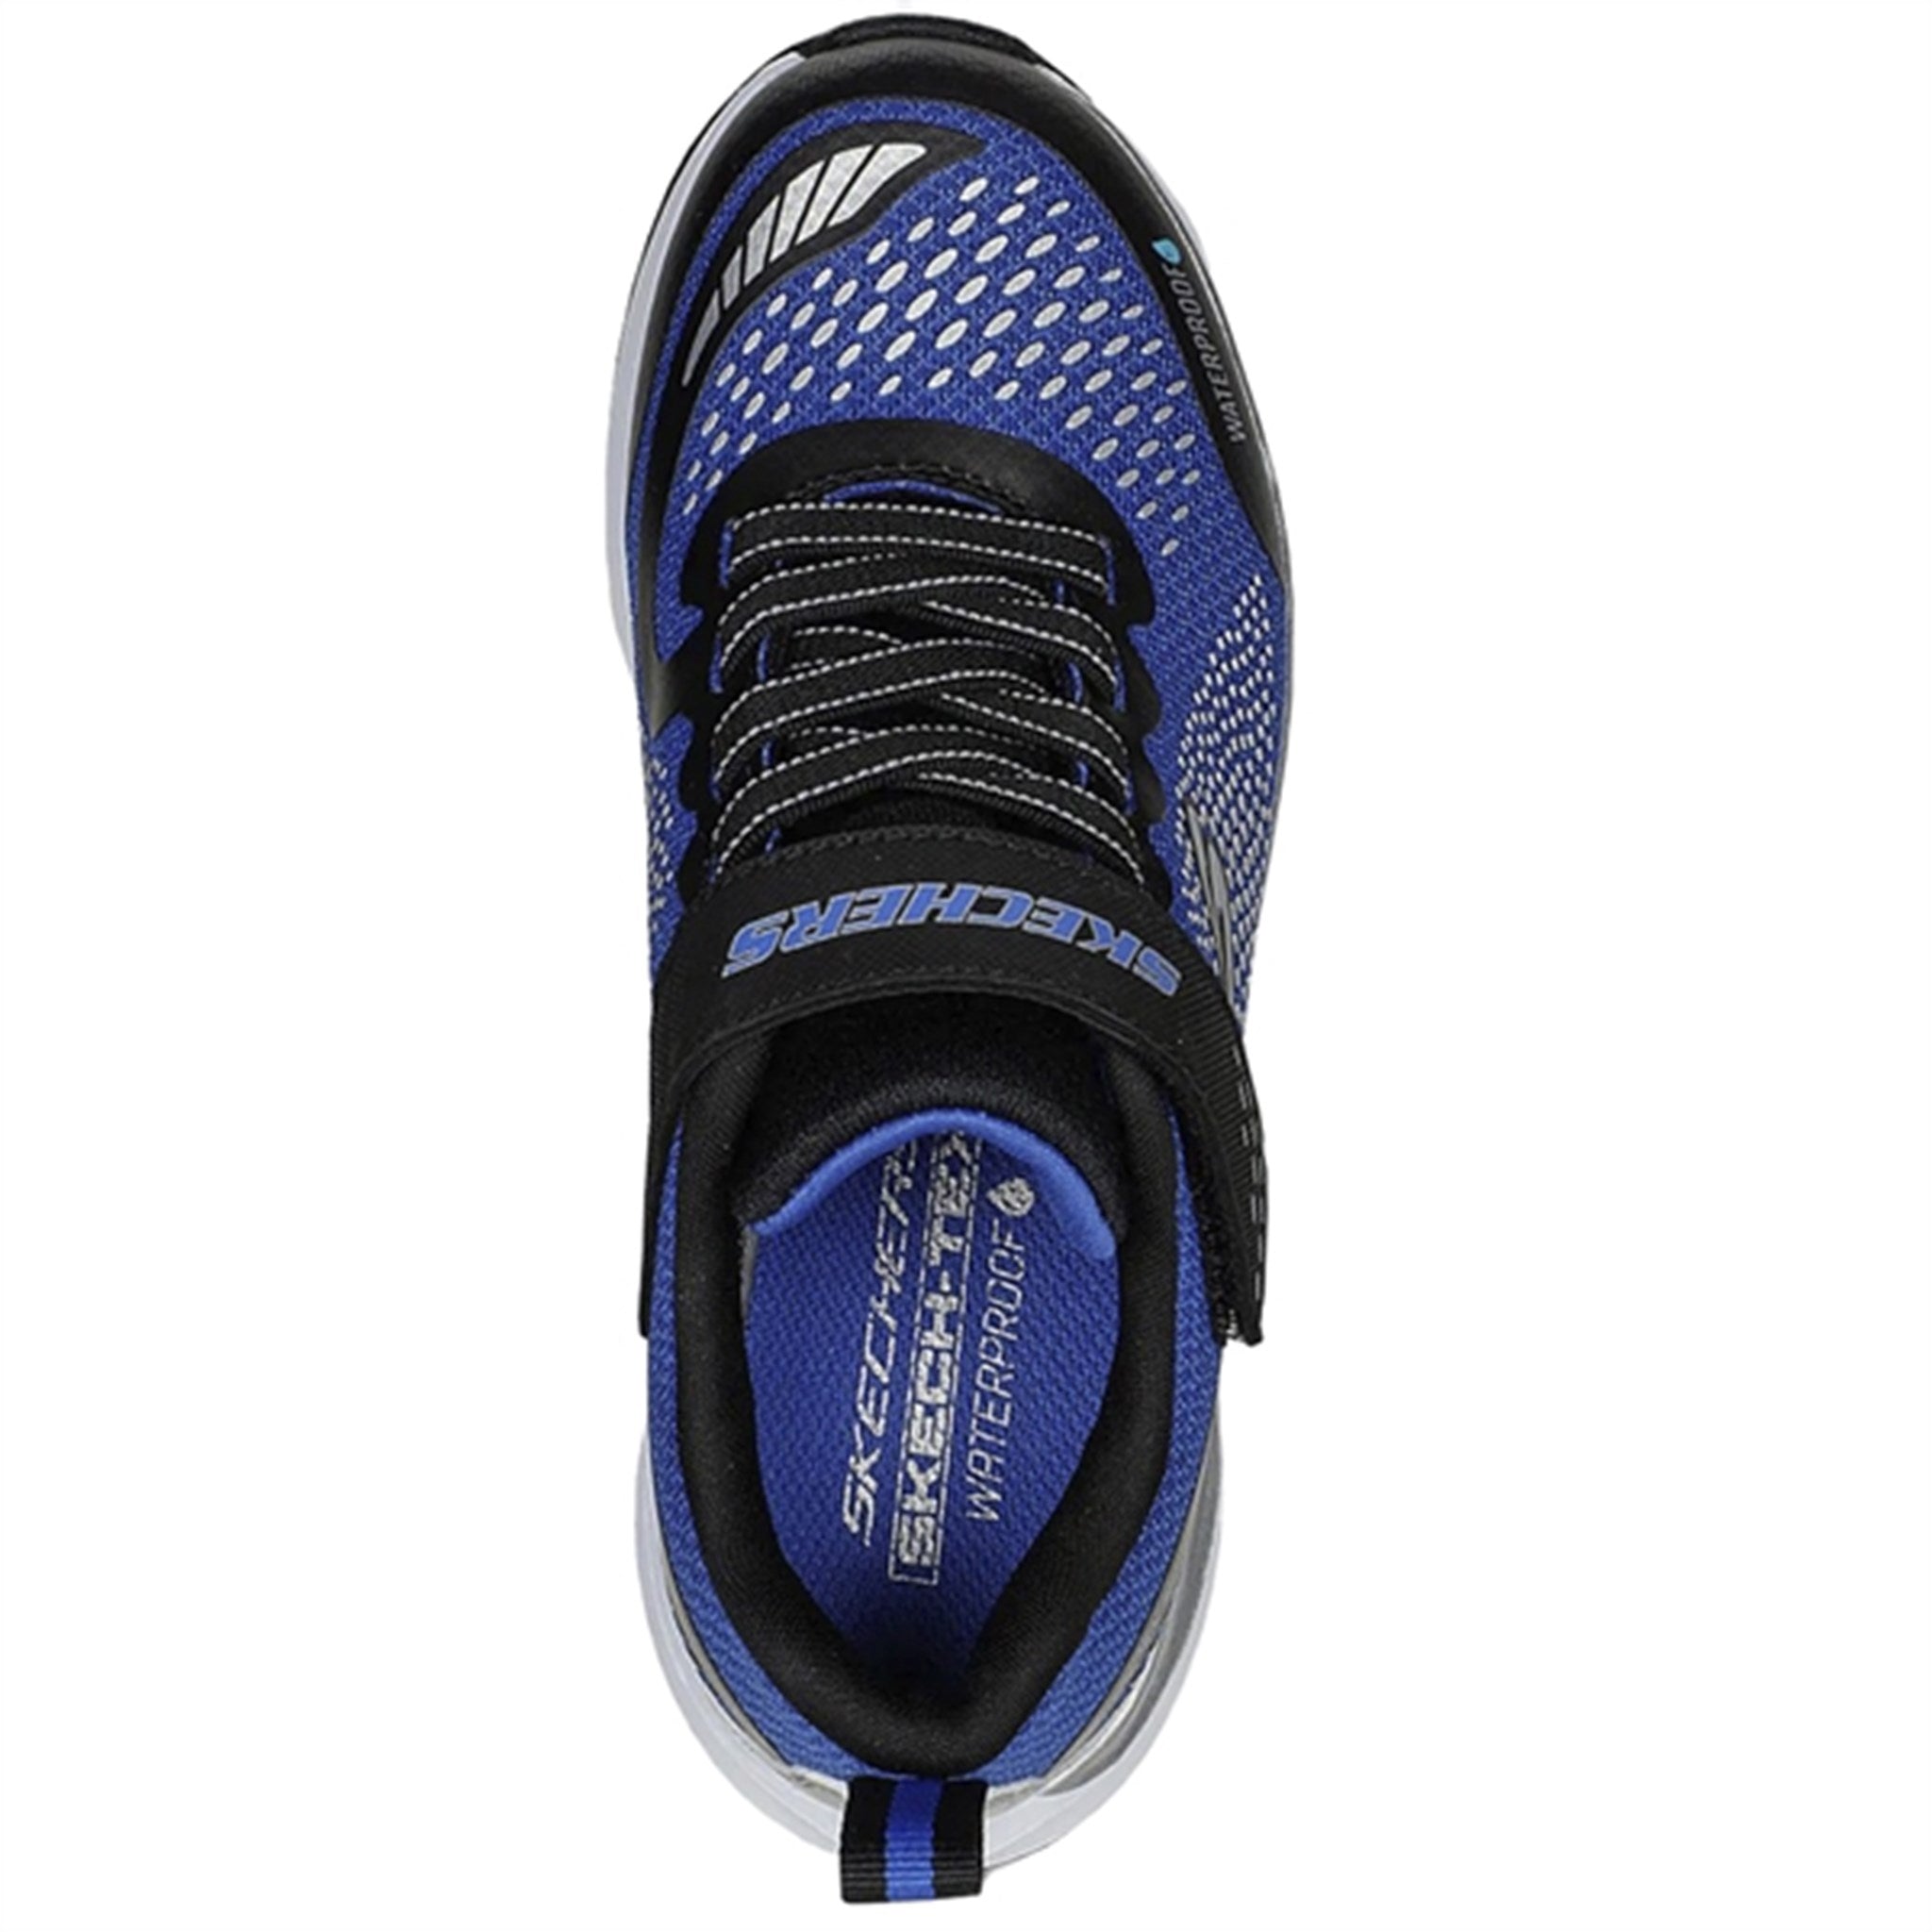 Skechers Ultra Groove Sneakers Waterproof Blue Black 4